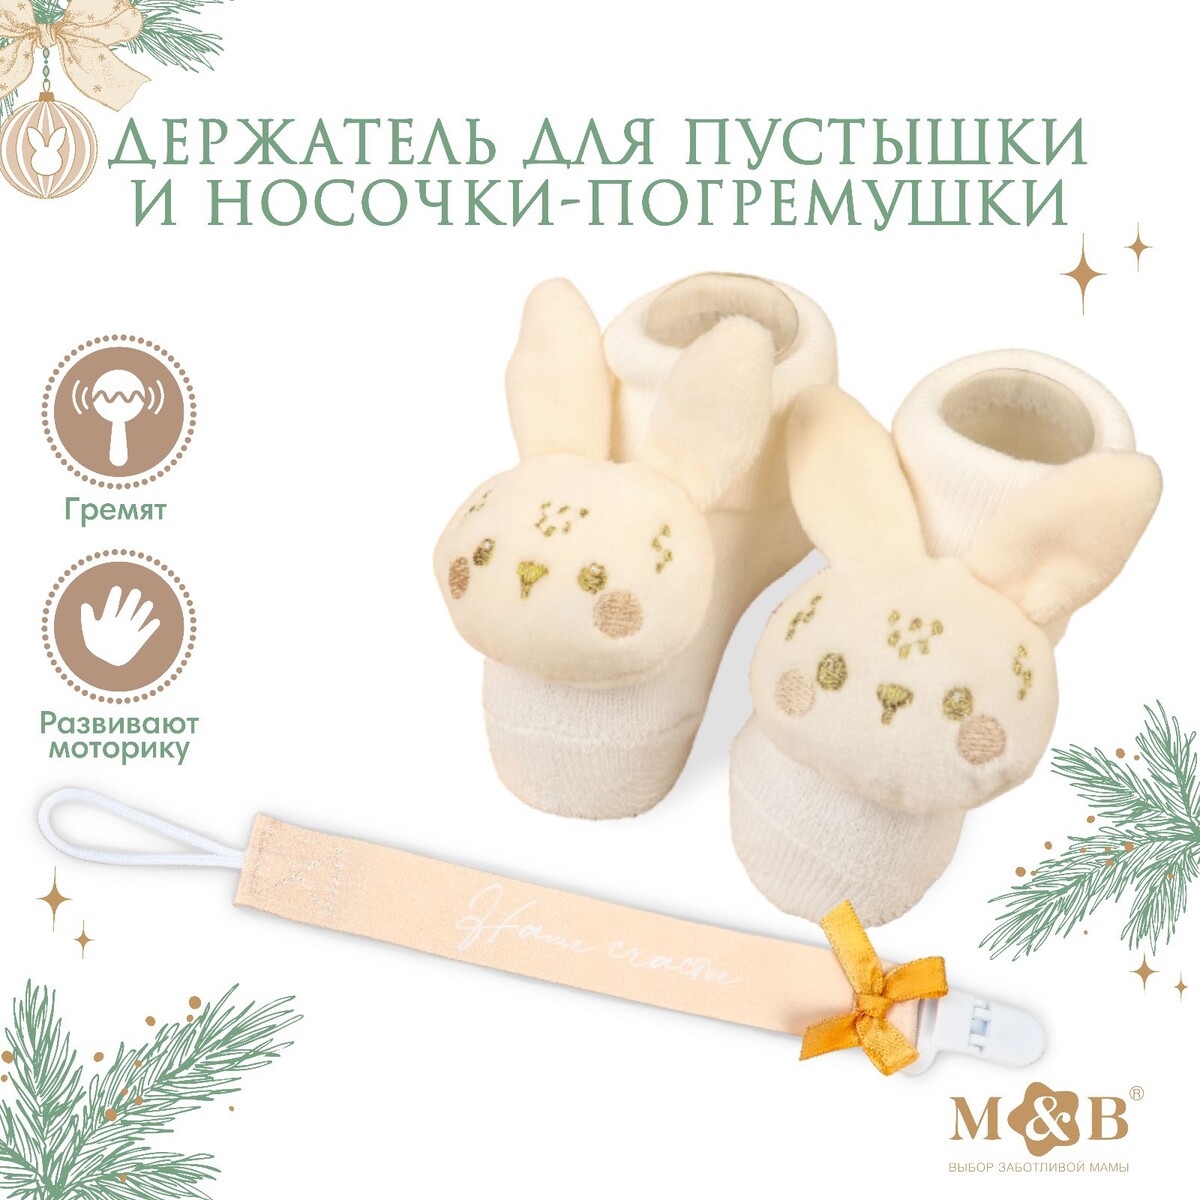 Подарочный набор новогодний: держатель для соски-пустышки на ленте и носочки - погремушки на ножки